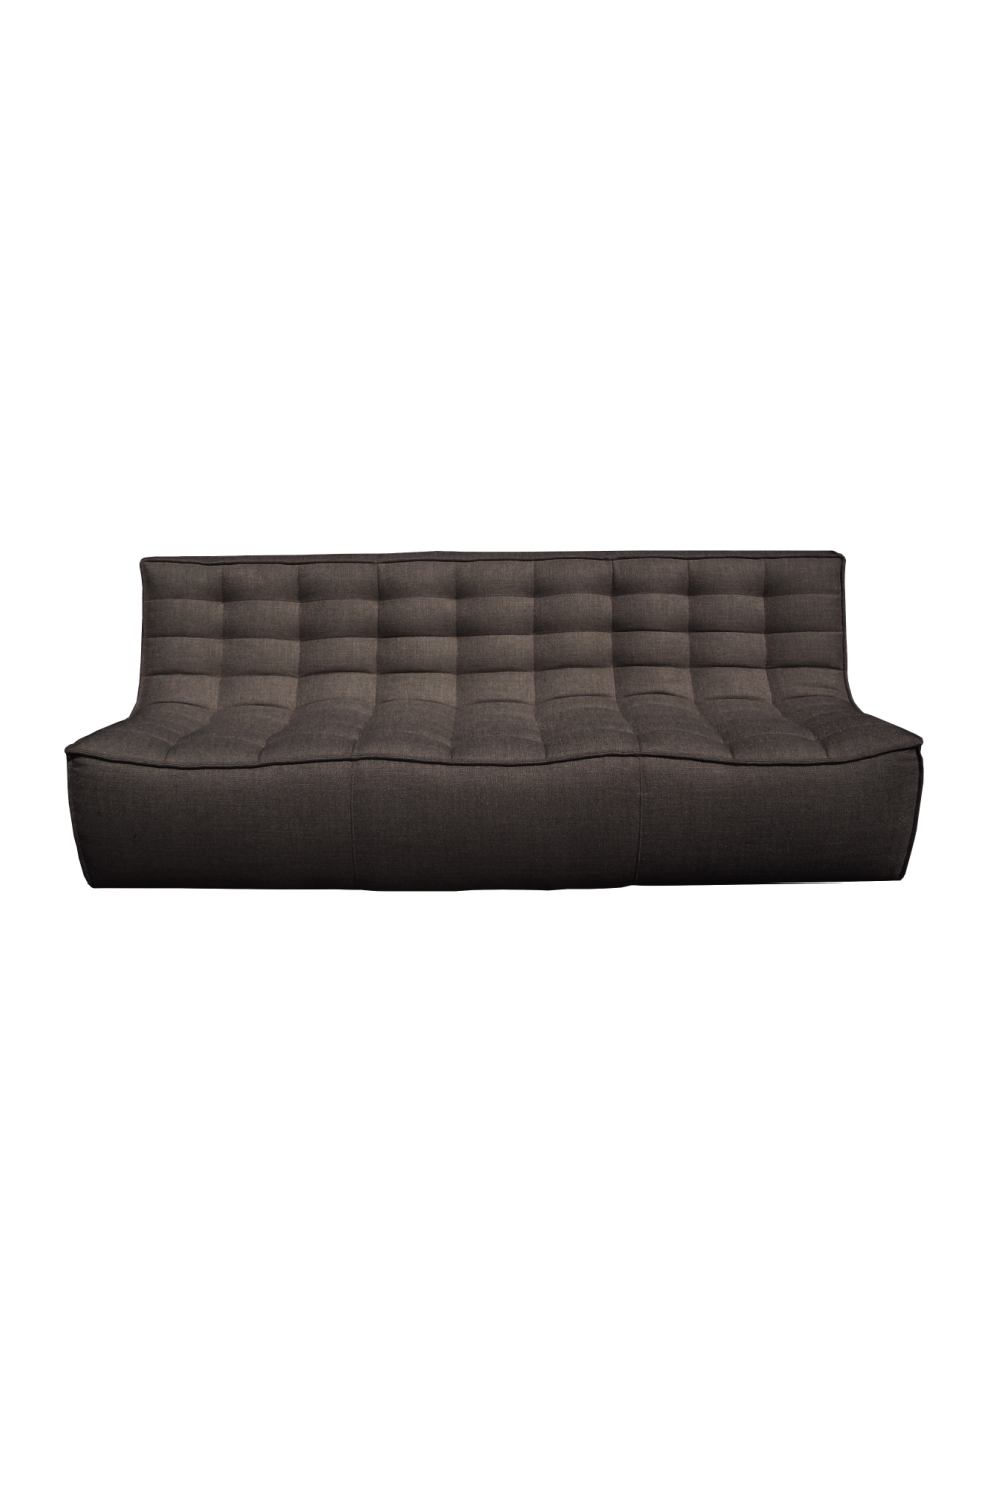 Dark Gray Modular Sofa | Ethnicraft N701 | Oroa.com